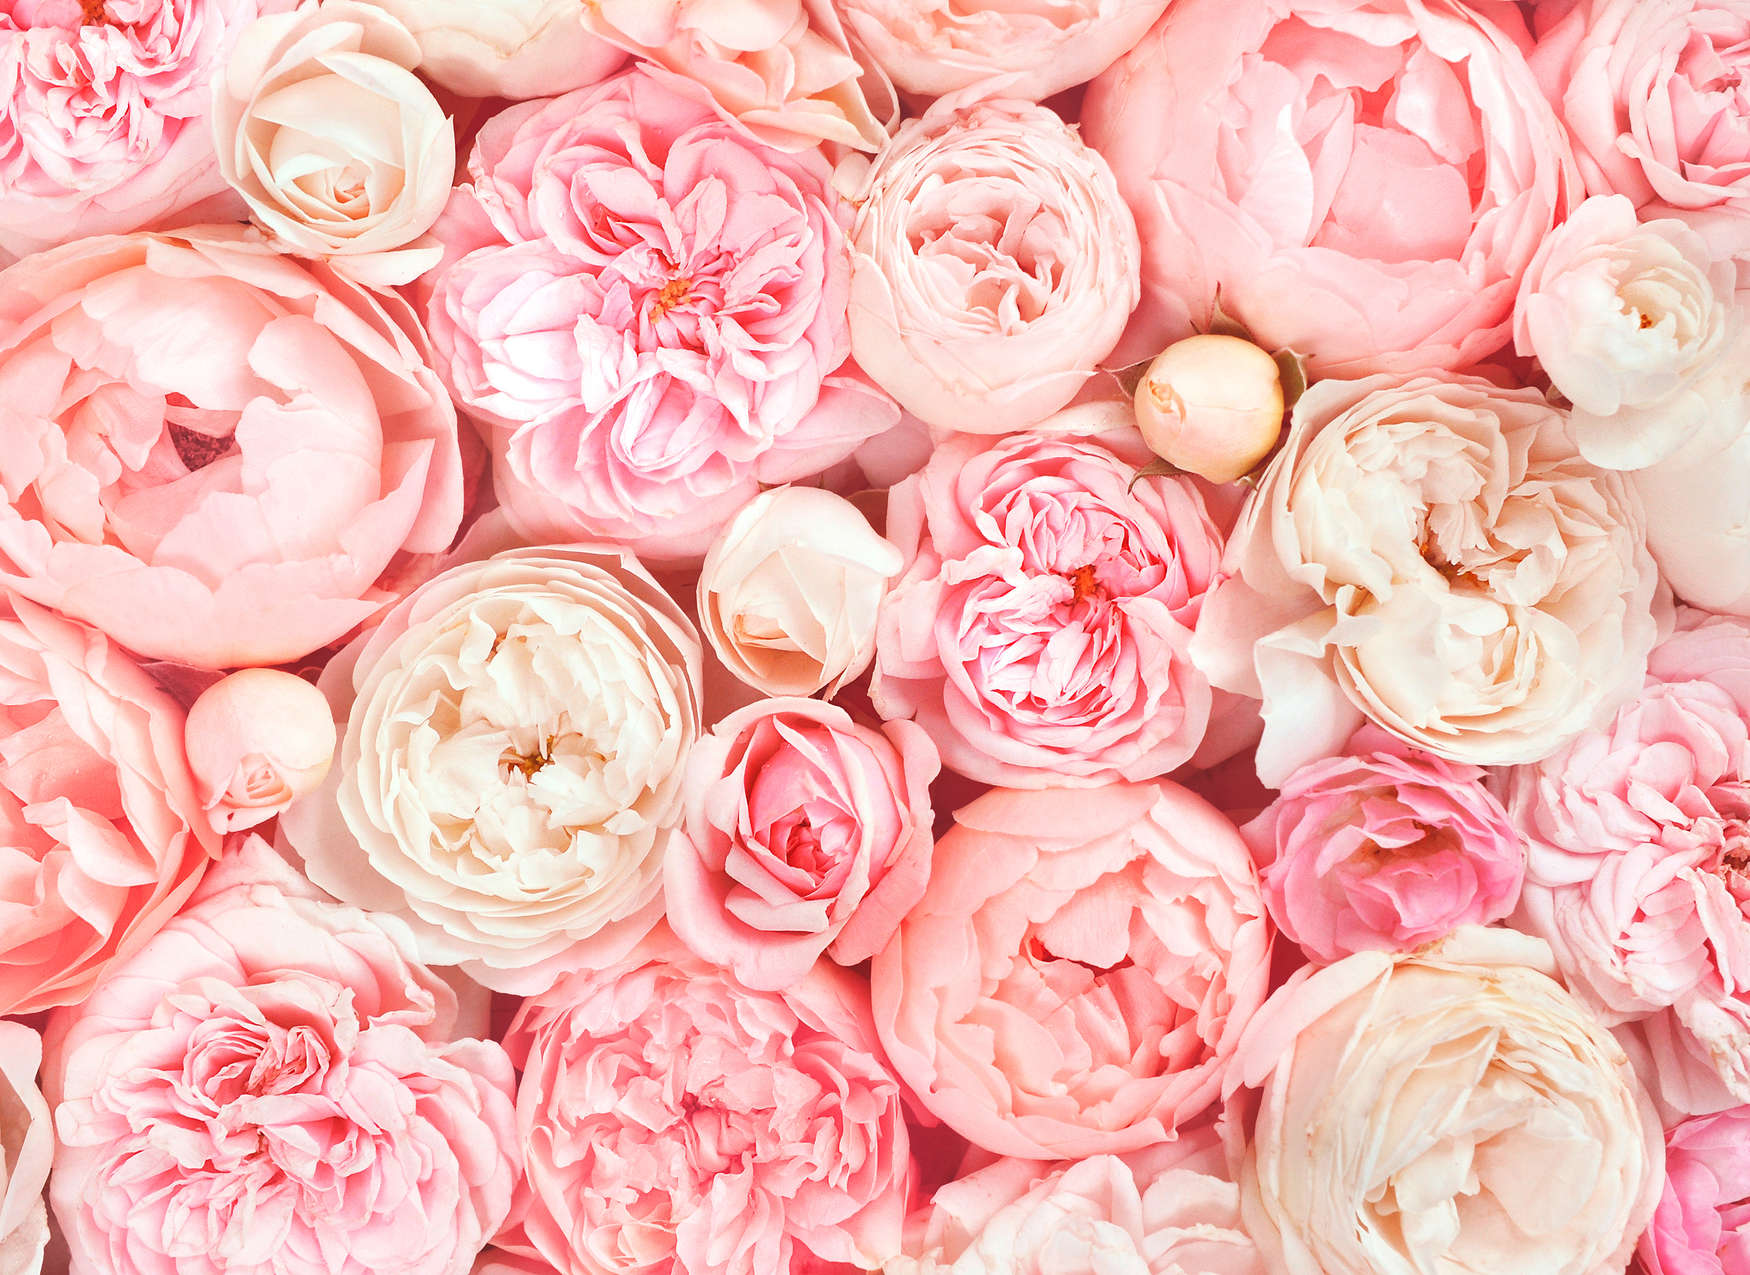             Papier peint avec motif de roses - rose, blanc, crème
        